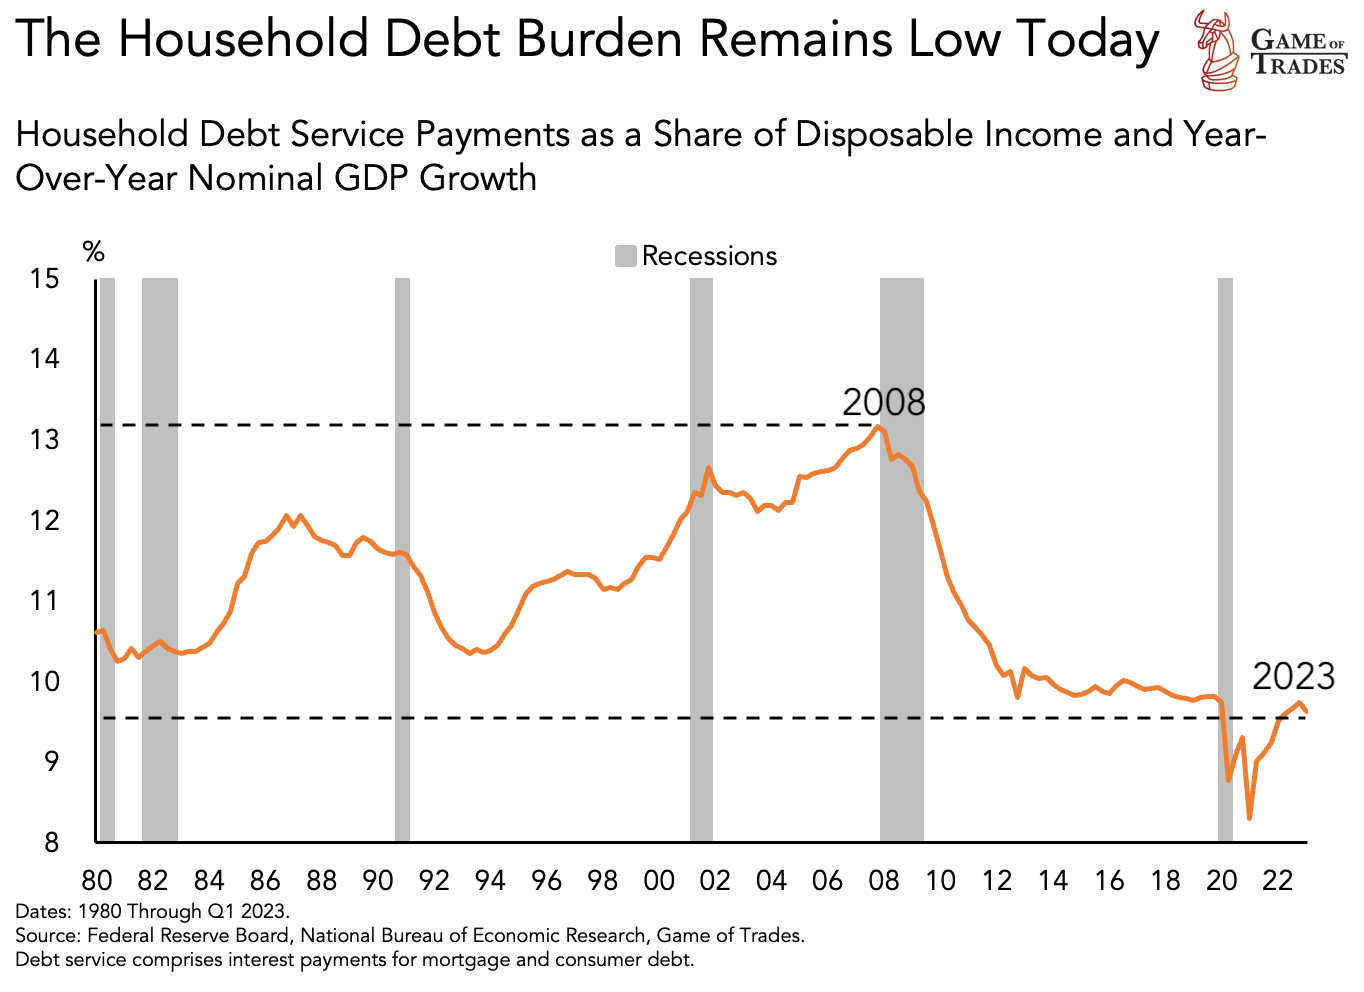 Household debt